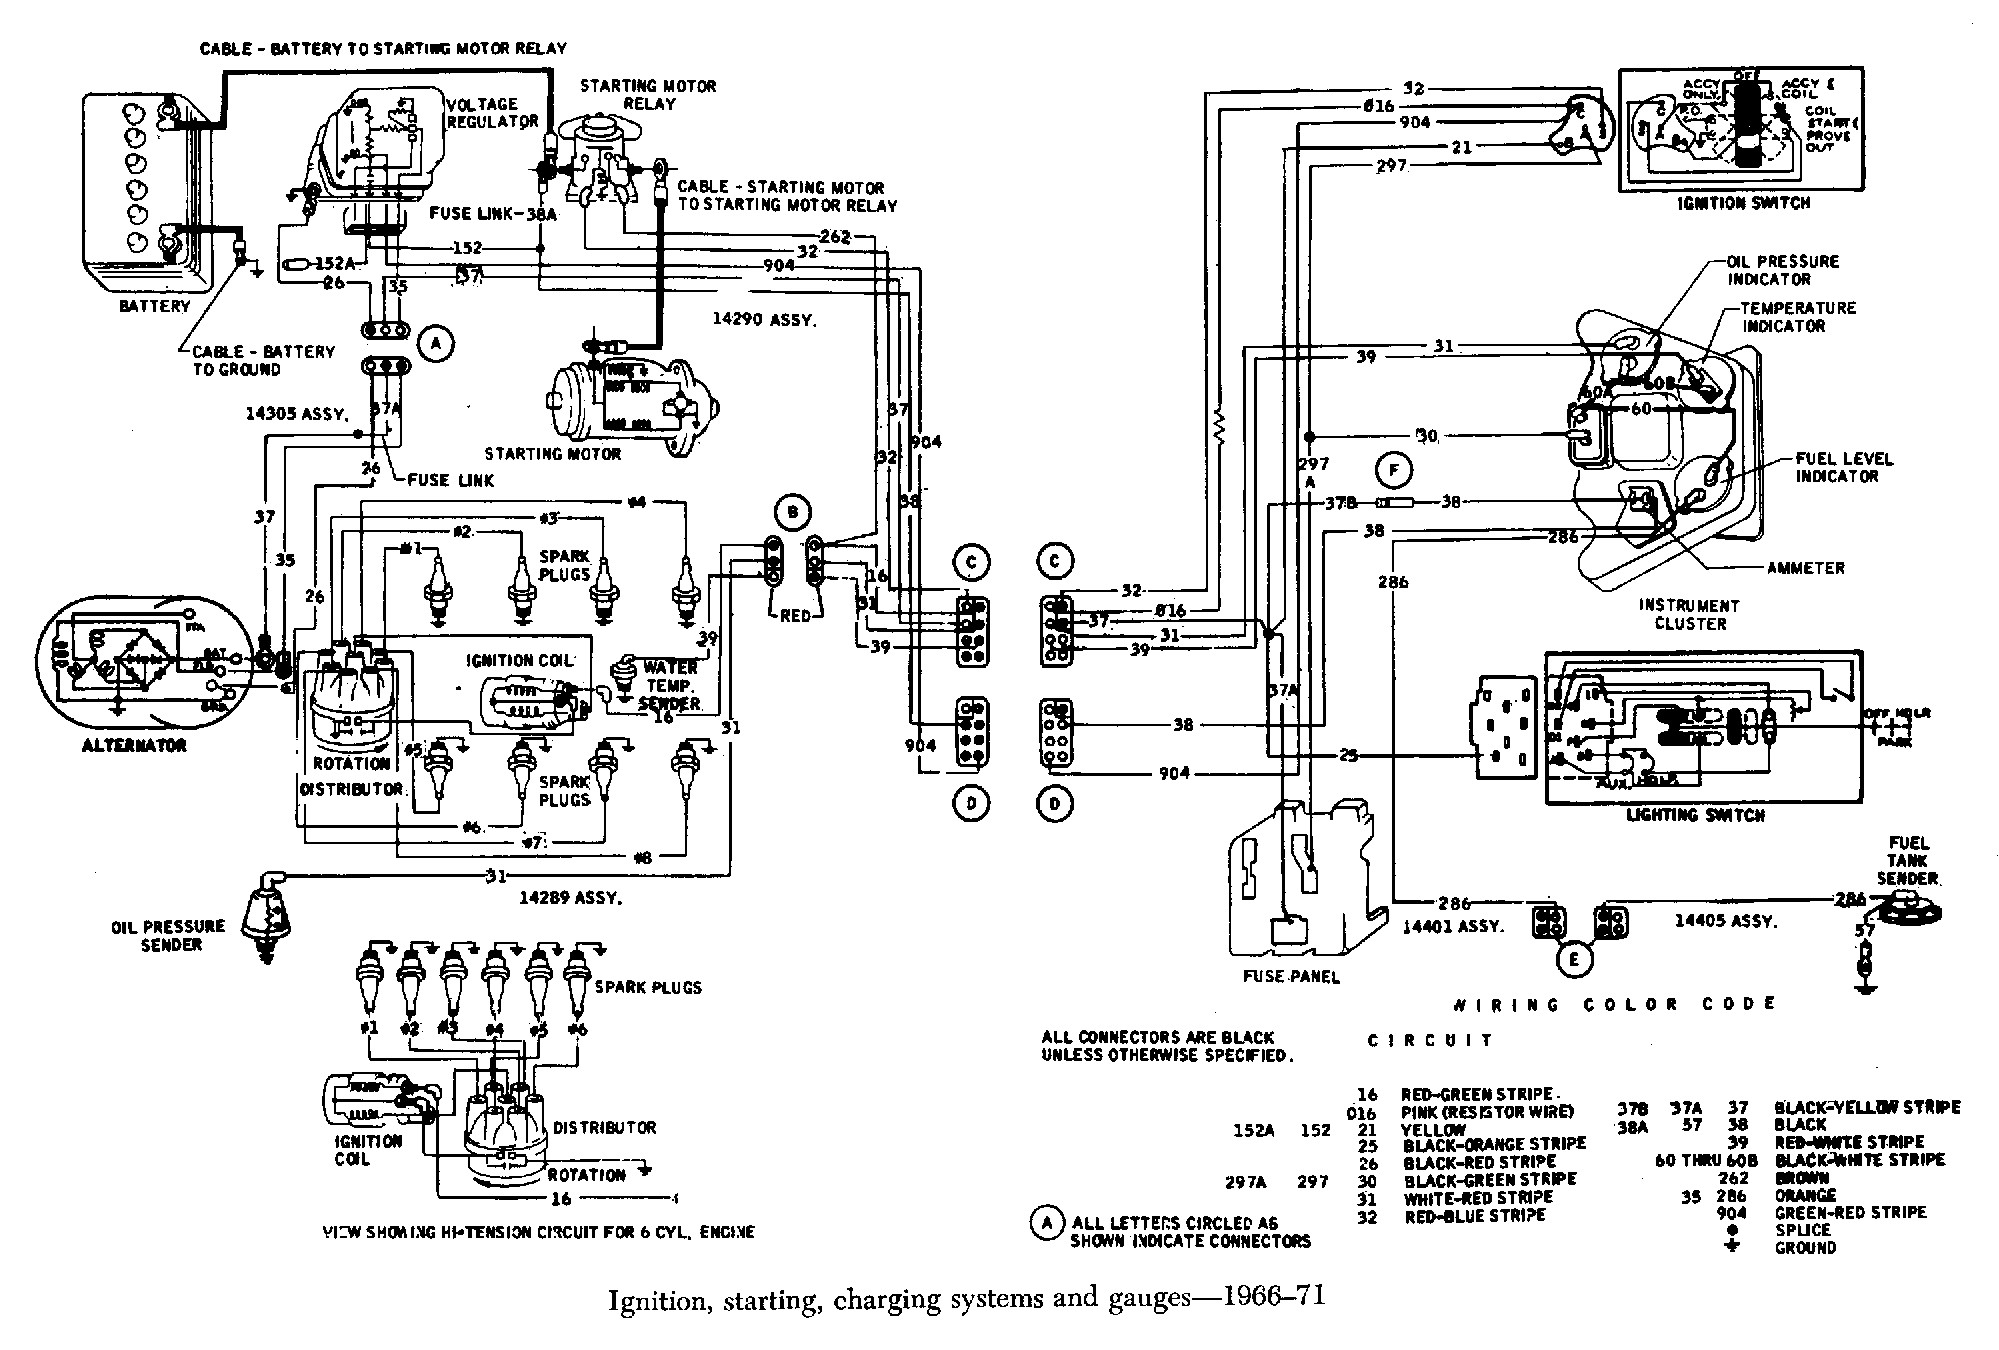 2001 Oldsmobile Alero Engine Diagram 1955 Oldsmobile Wiring Diagram Oldsmobile Wiring Diagrams Instructions Of 2001 Oldsmobile Alero Engine Diagram